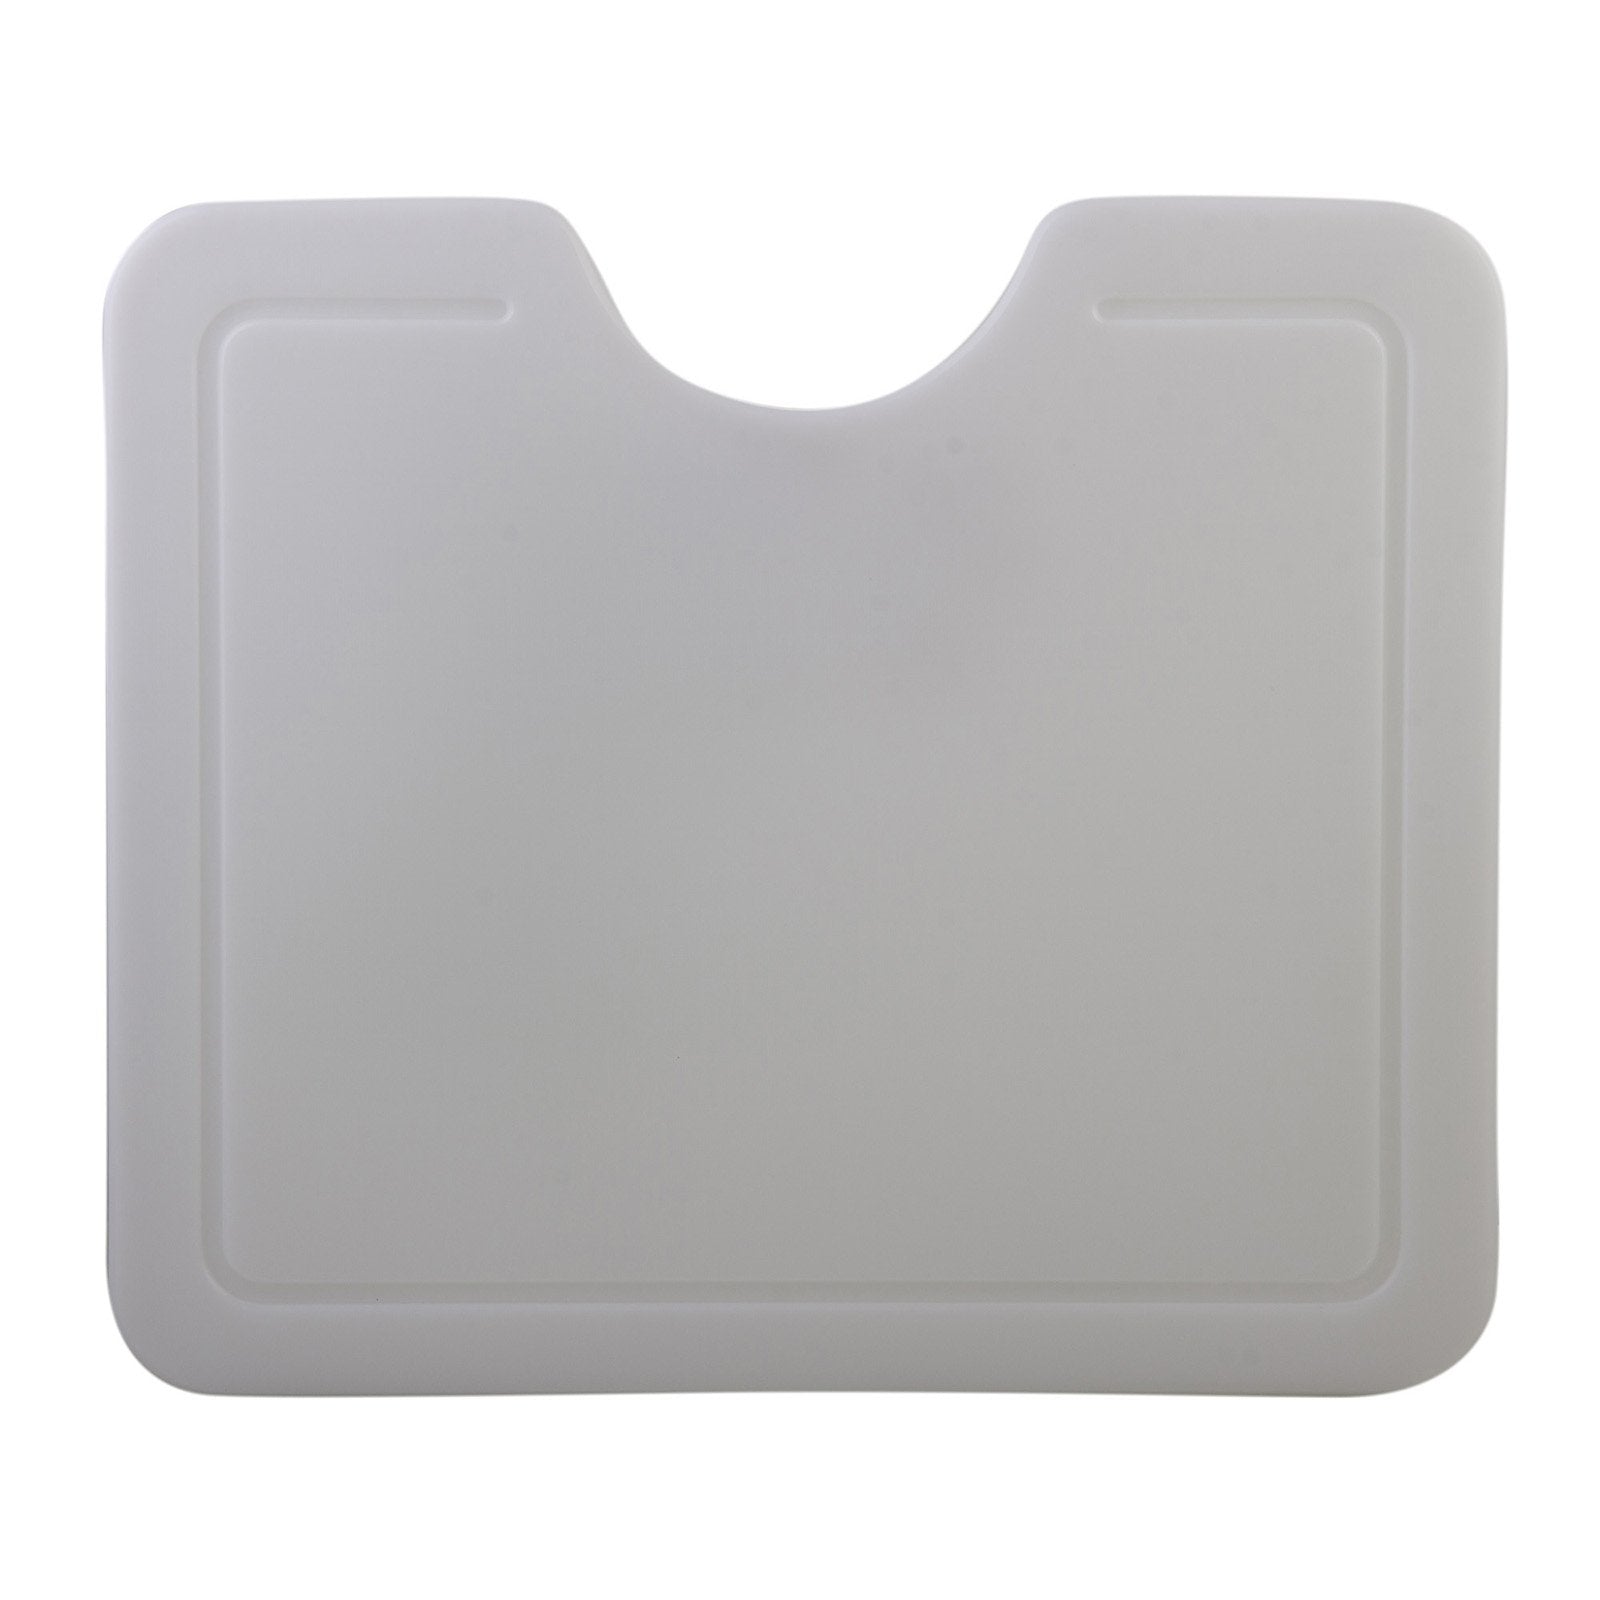 ALFI, ALFI AB10PCB Polyethylene Cutting Board for AB3020,AB2420,AB3420 Granite Sinks